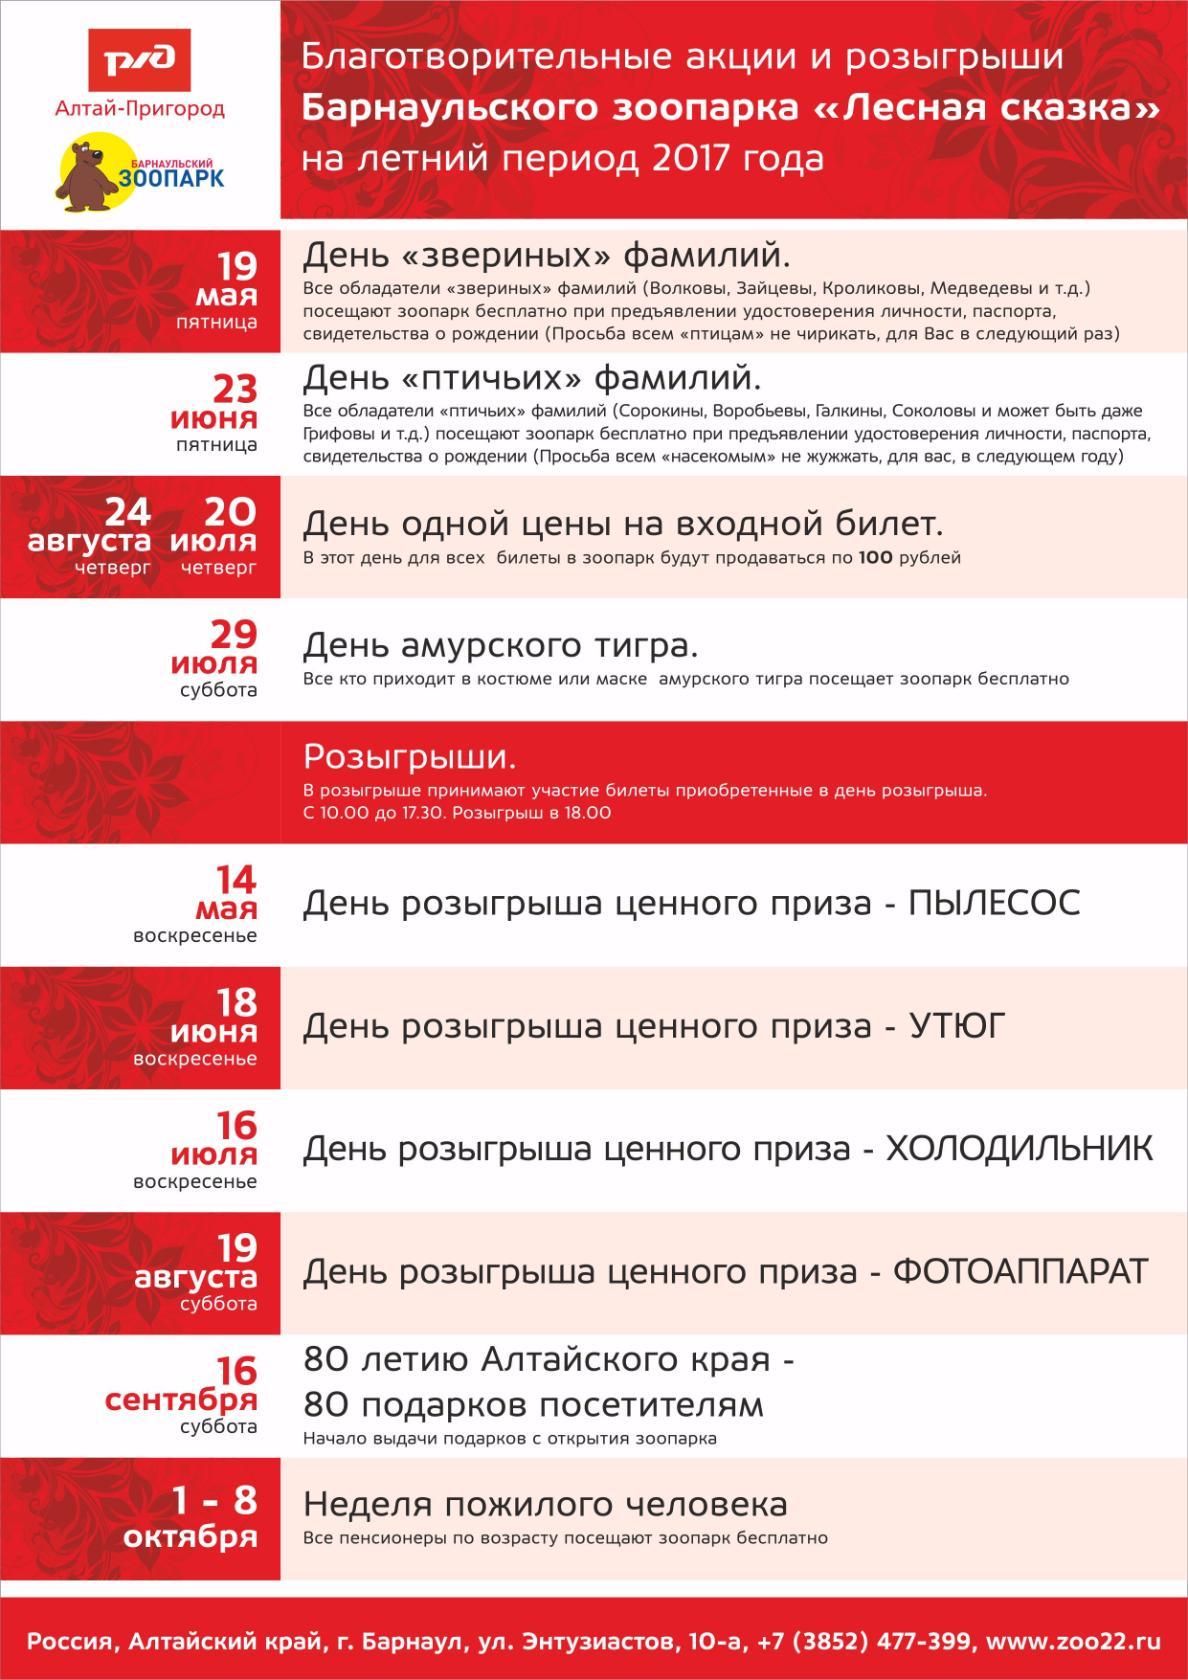 Акции и розыгрыши от Барнаульского зоопарка "Лесная сказка" на летний период 2017 года.